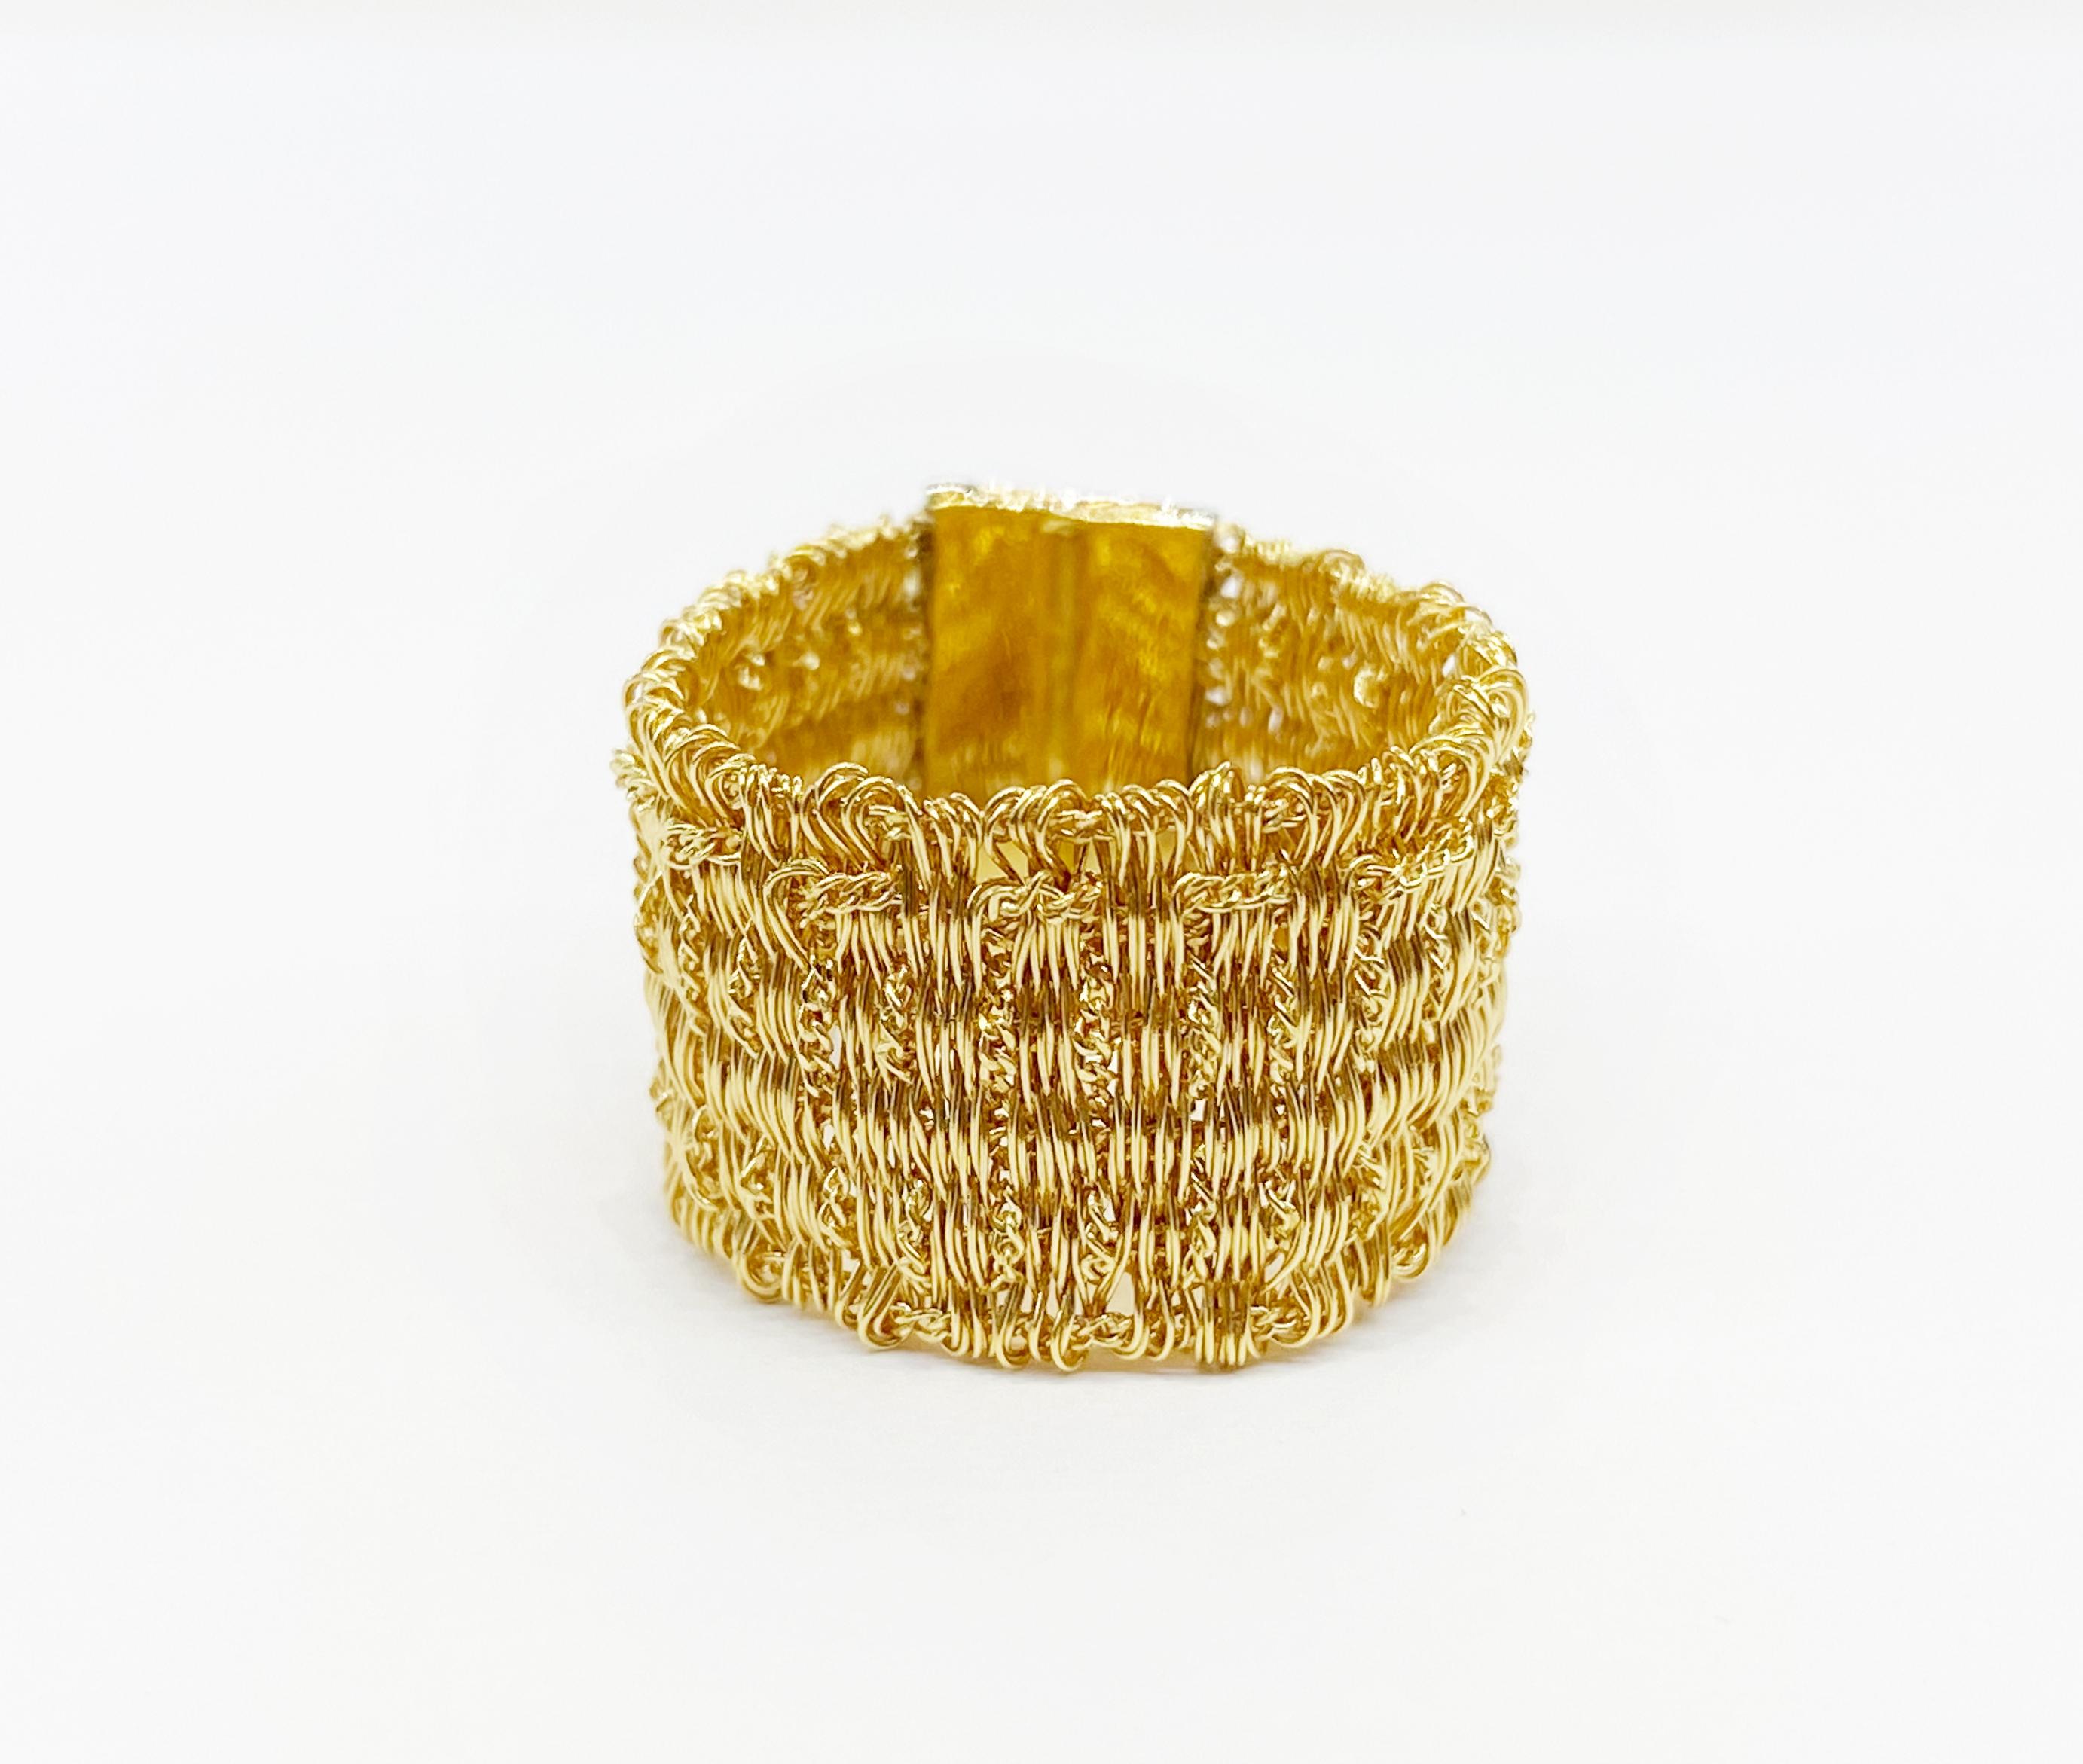 Une extraordinaire bague en maille d'or, tissée avec du fil d'or jaune 18 carats et fabriquée à la main en Italie.
O'Che 1867 est née il y a un siècle et demi à Macao. La marque est réputée pour ses collections de haute joaillerie aux designs